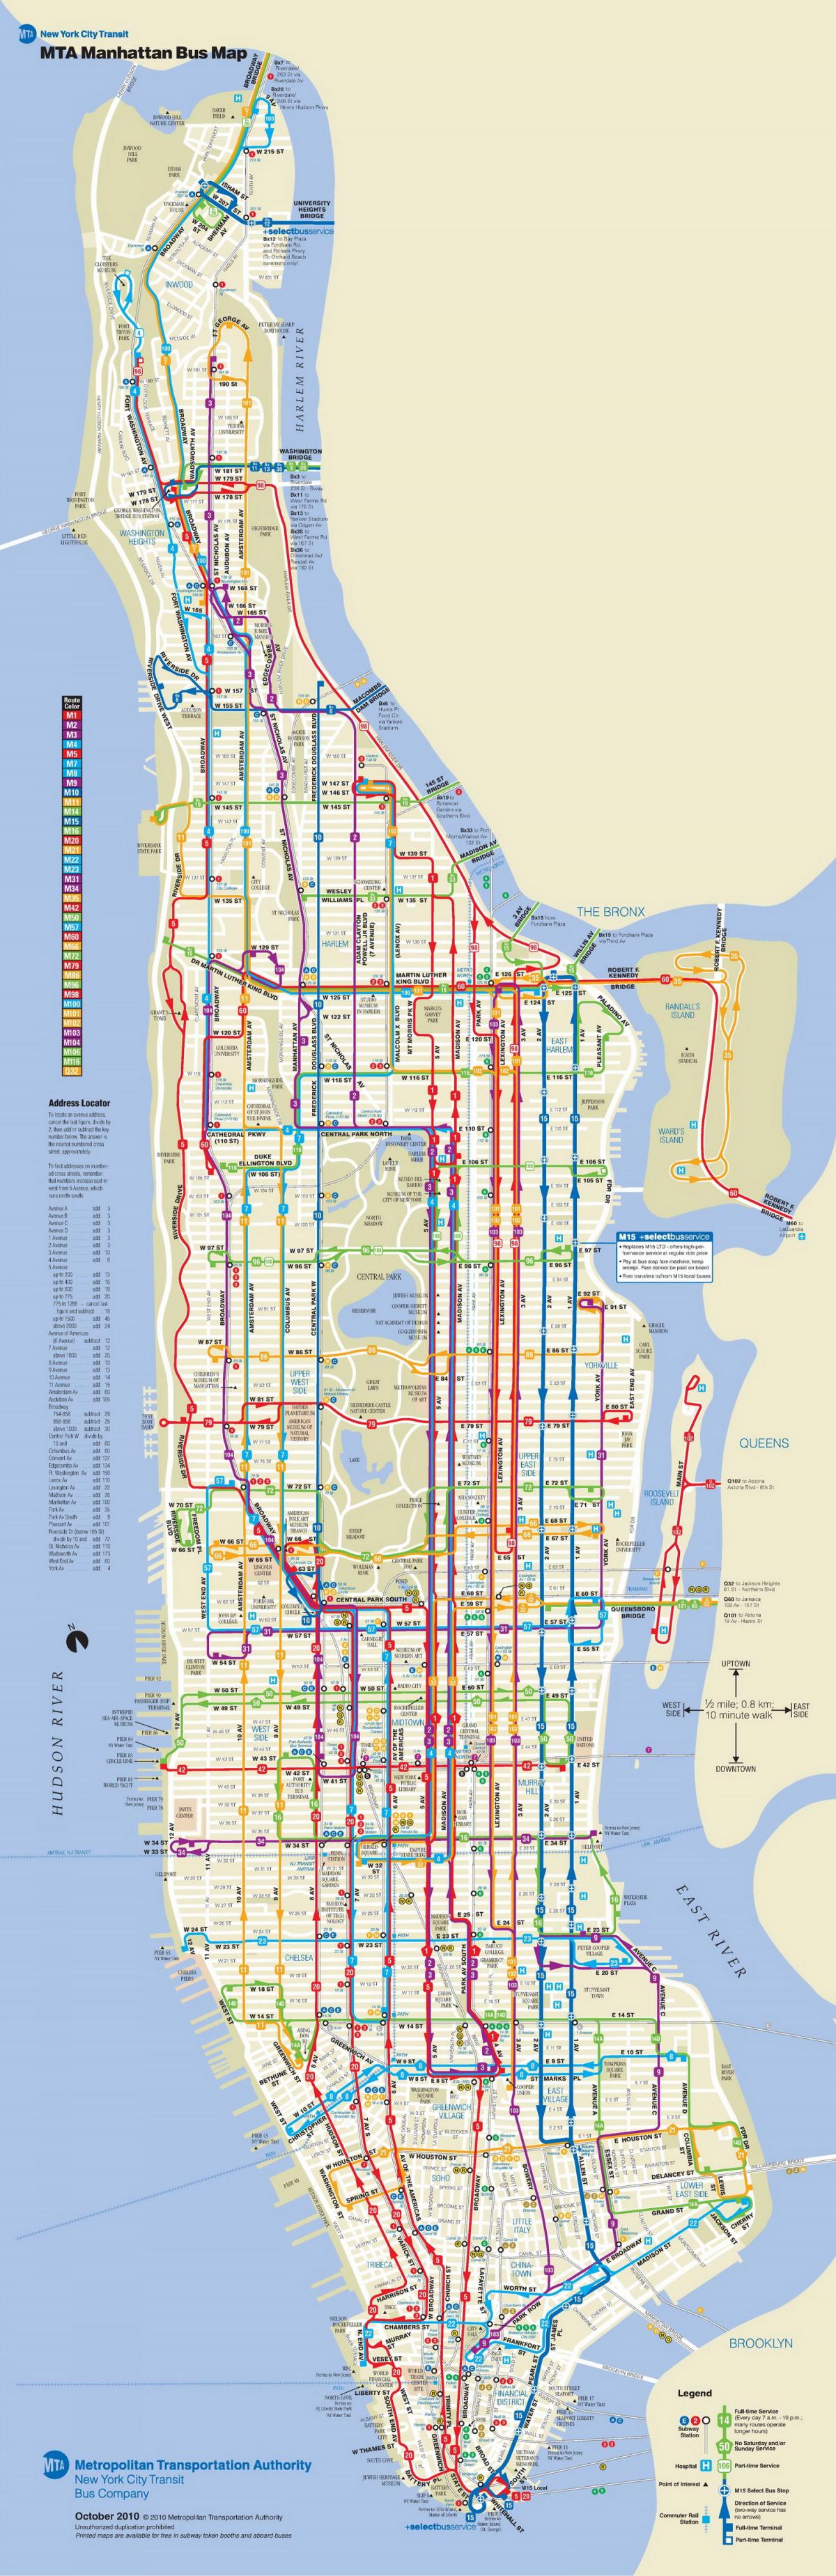 MTA avtobus zemljevid manhattan